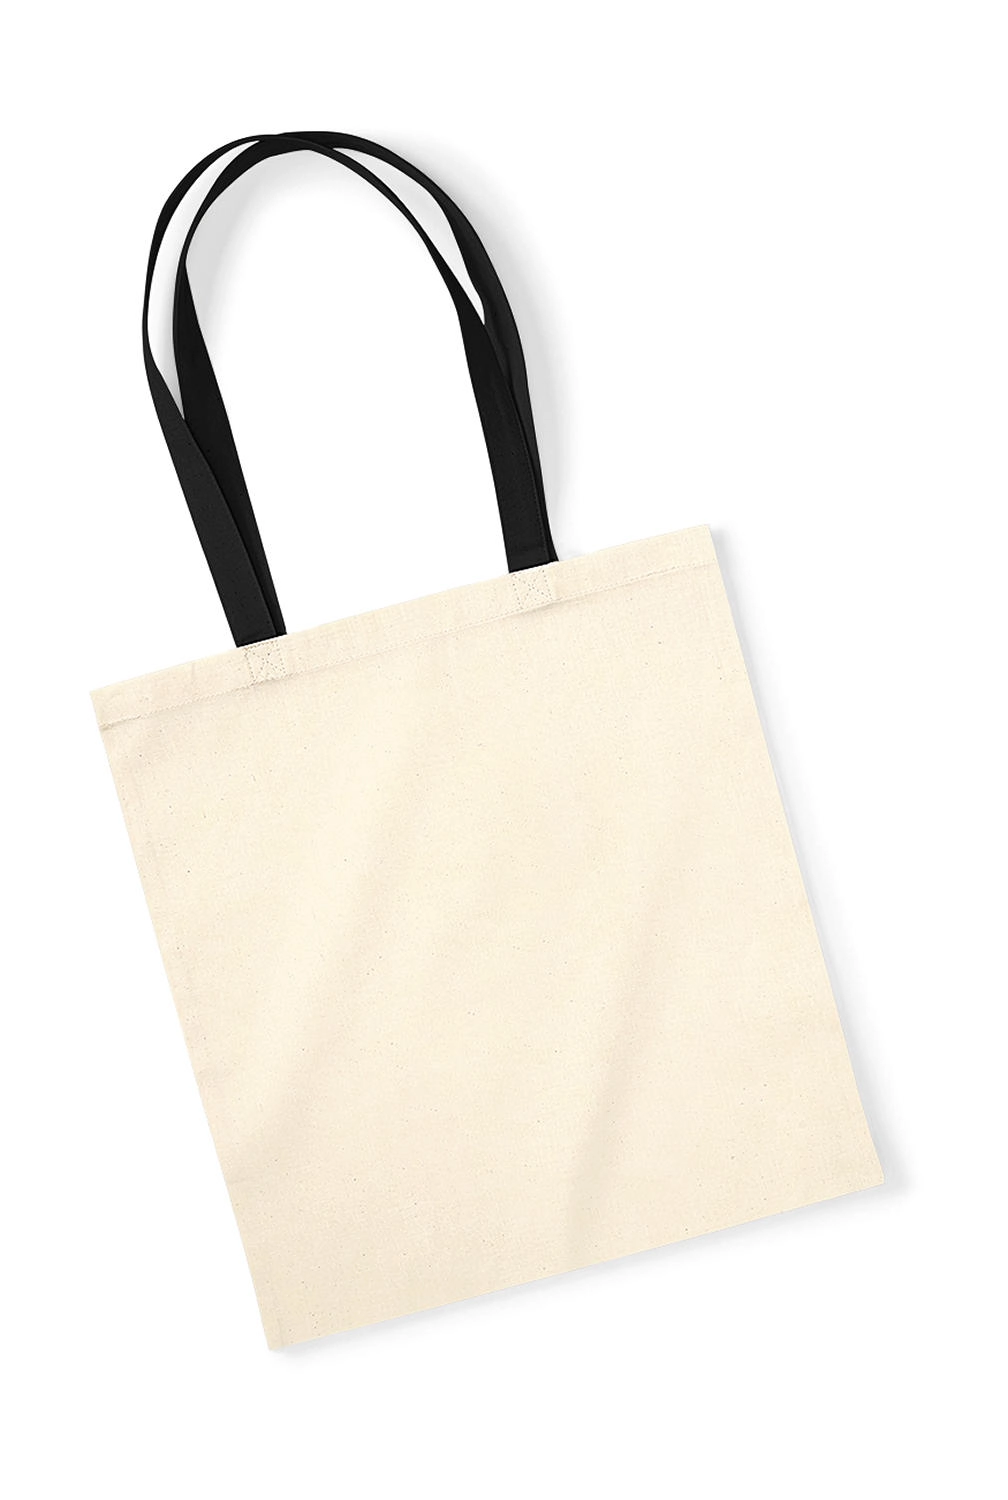 EarthAware™ Organic Bag for Life - Contrast Handle zum Besticken und Bedrucken in der Farbe Natural/Black mit Ihren Logo, Schriftzug oder Motiv.